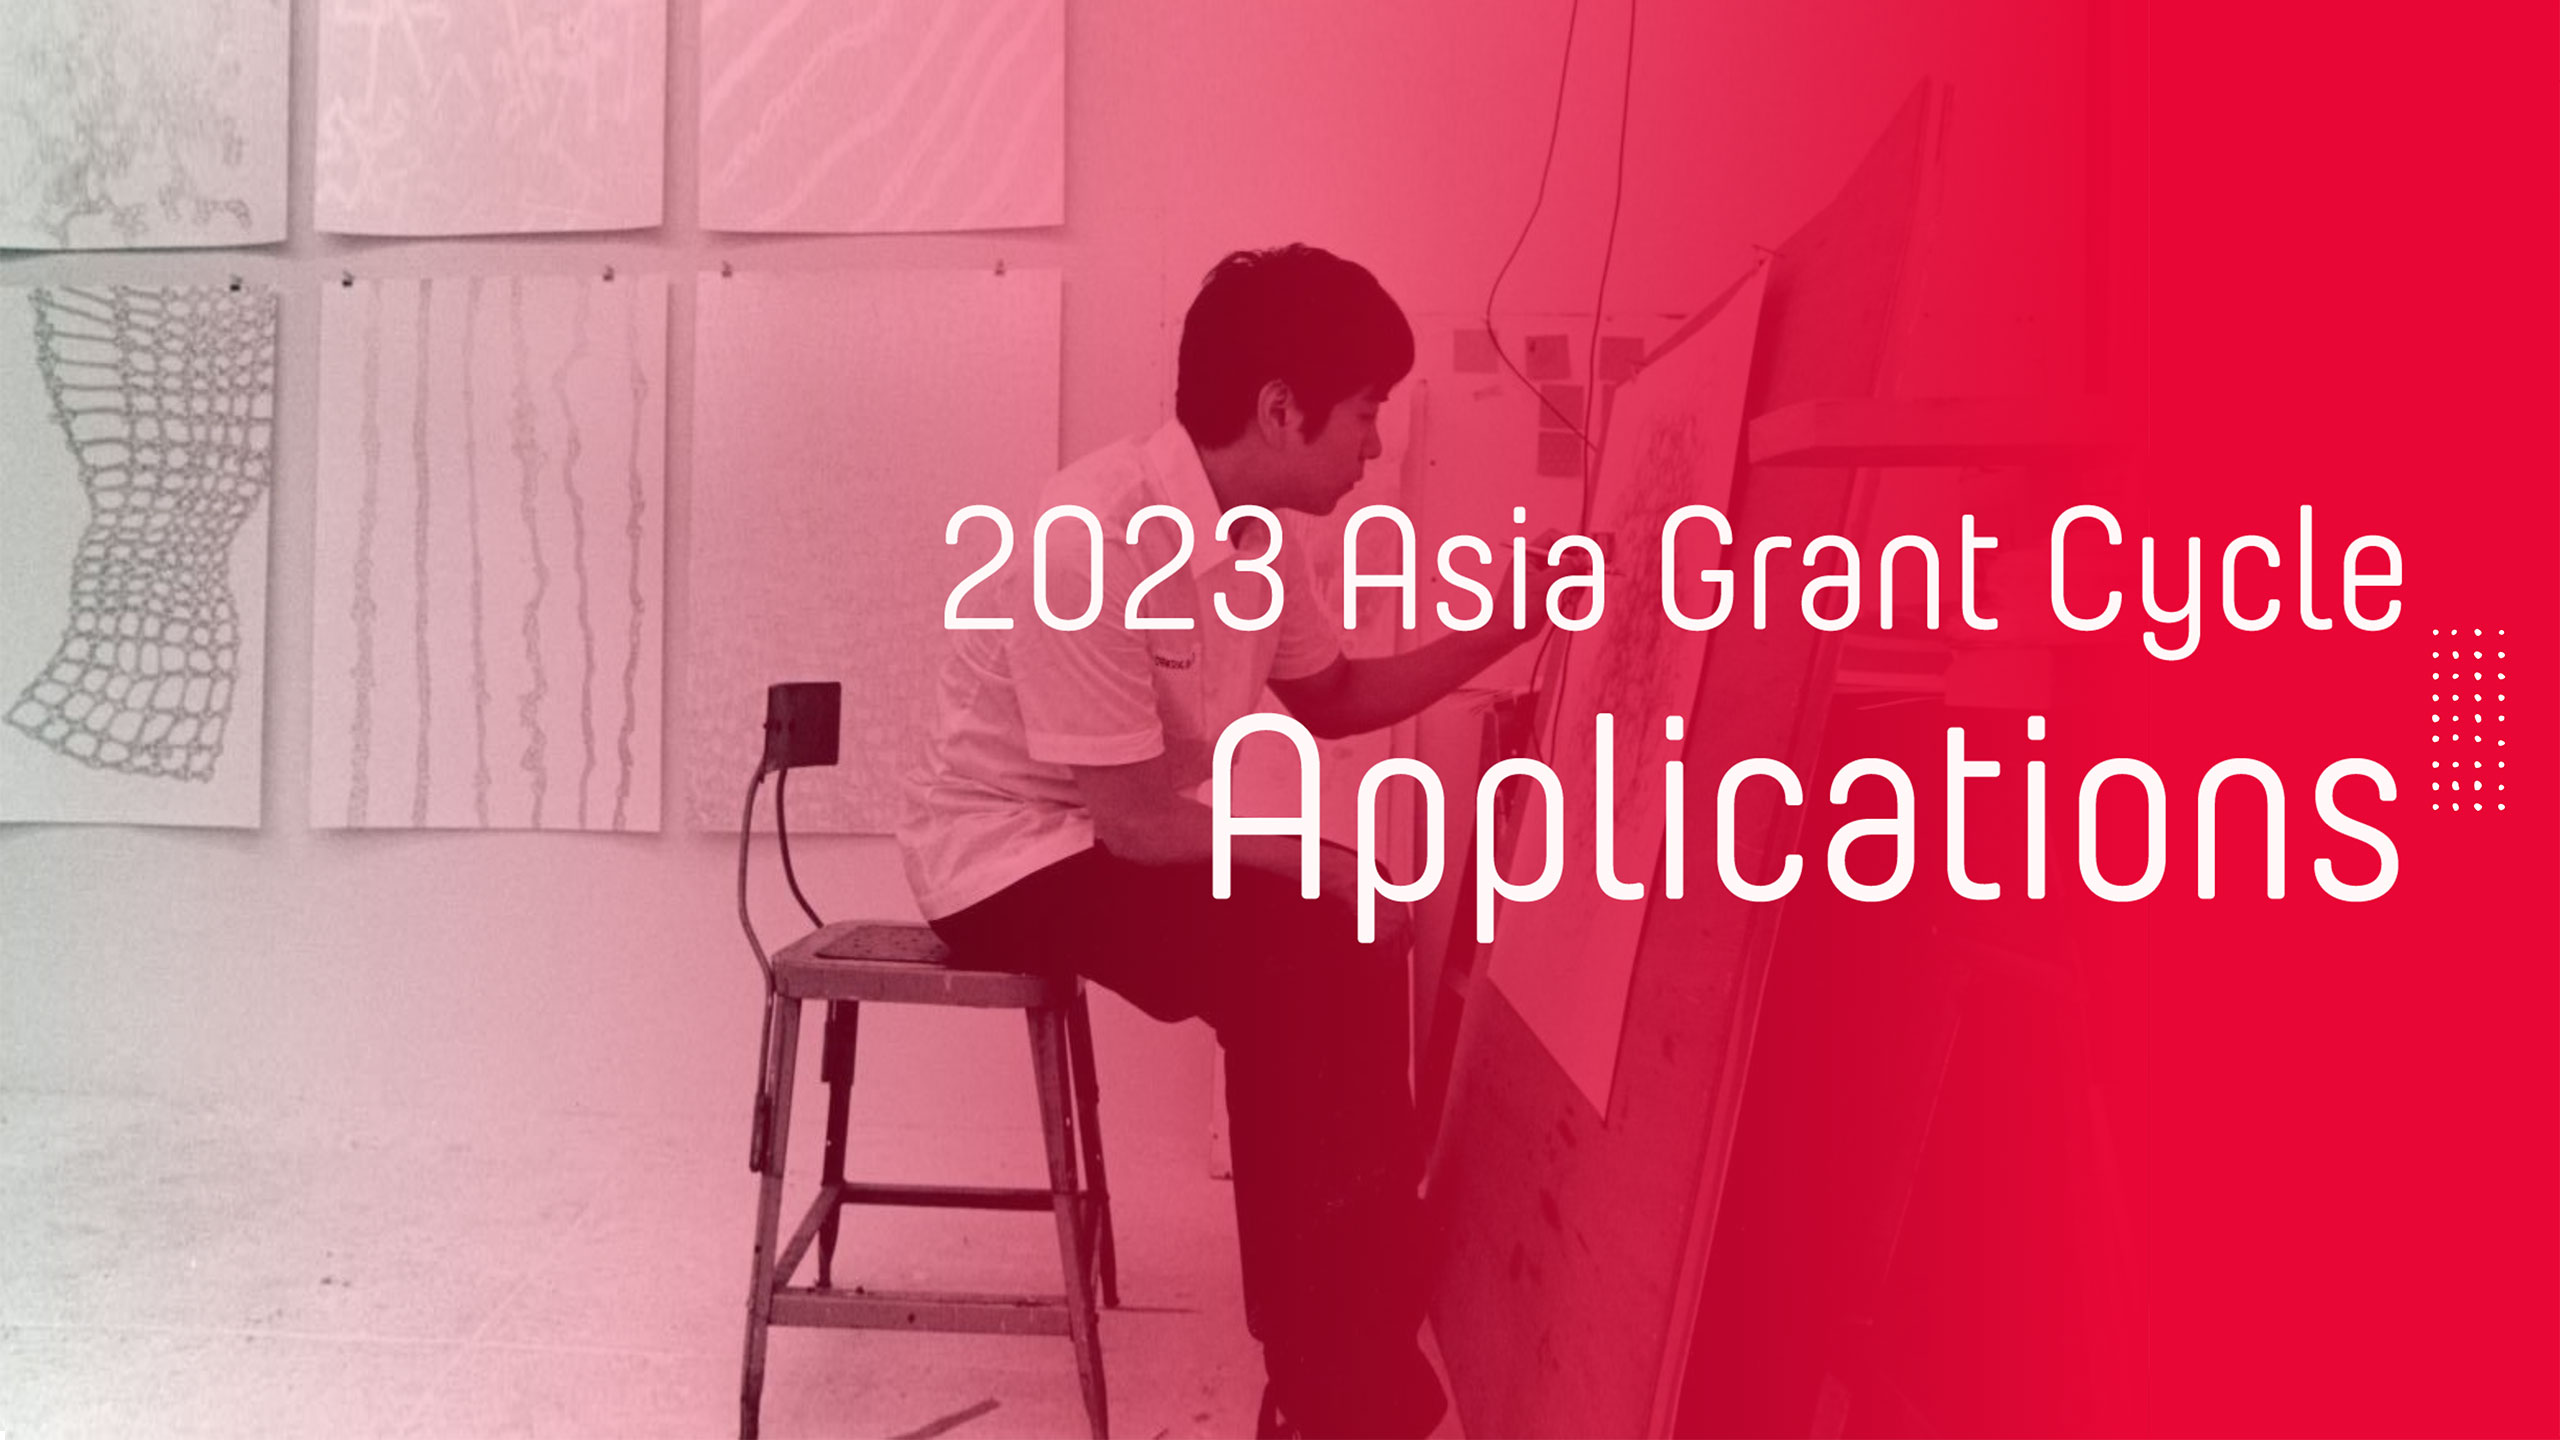 亞洲文化協會 2023 年亞洲資助週期申請